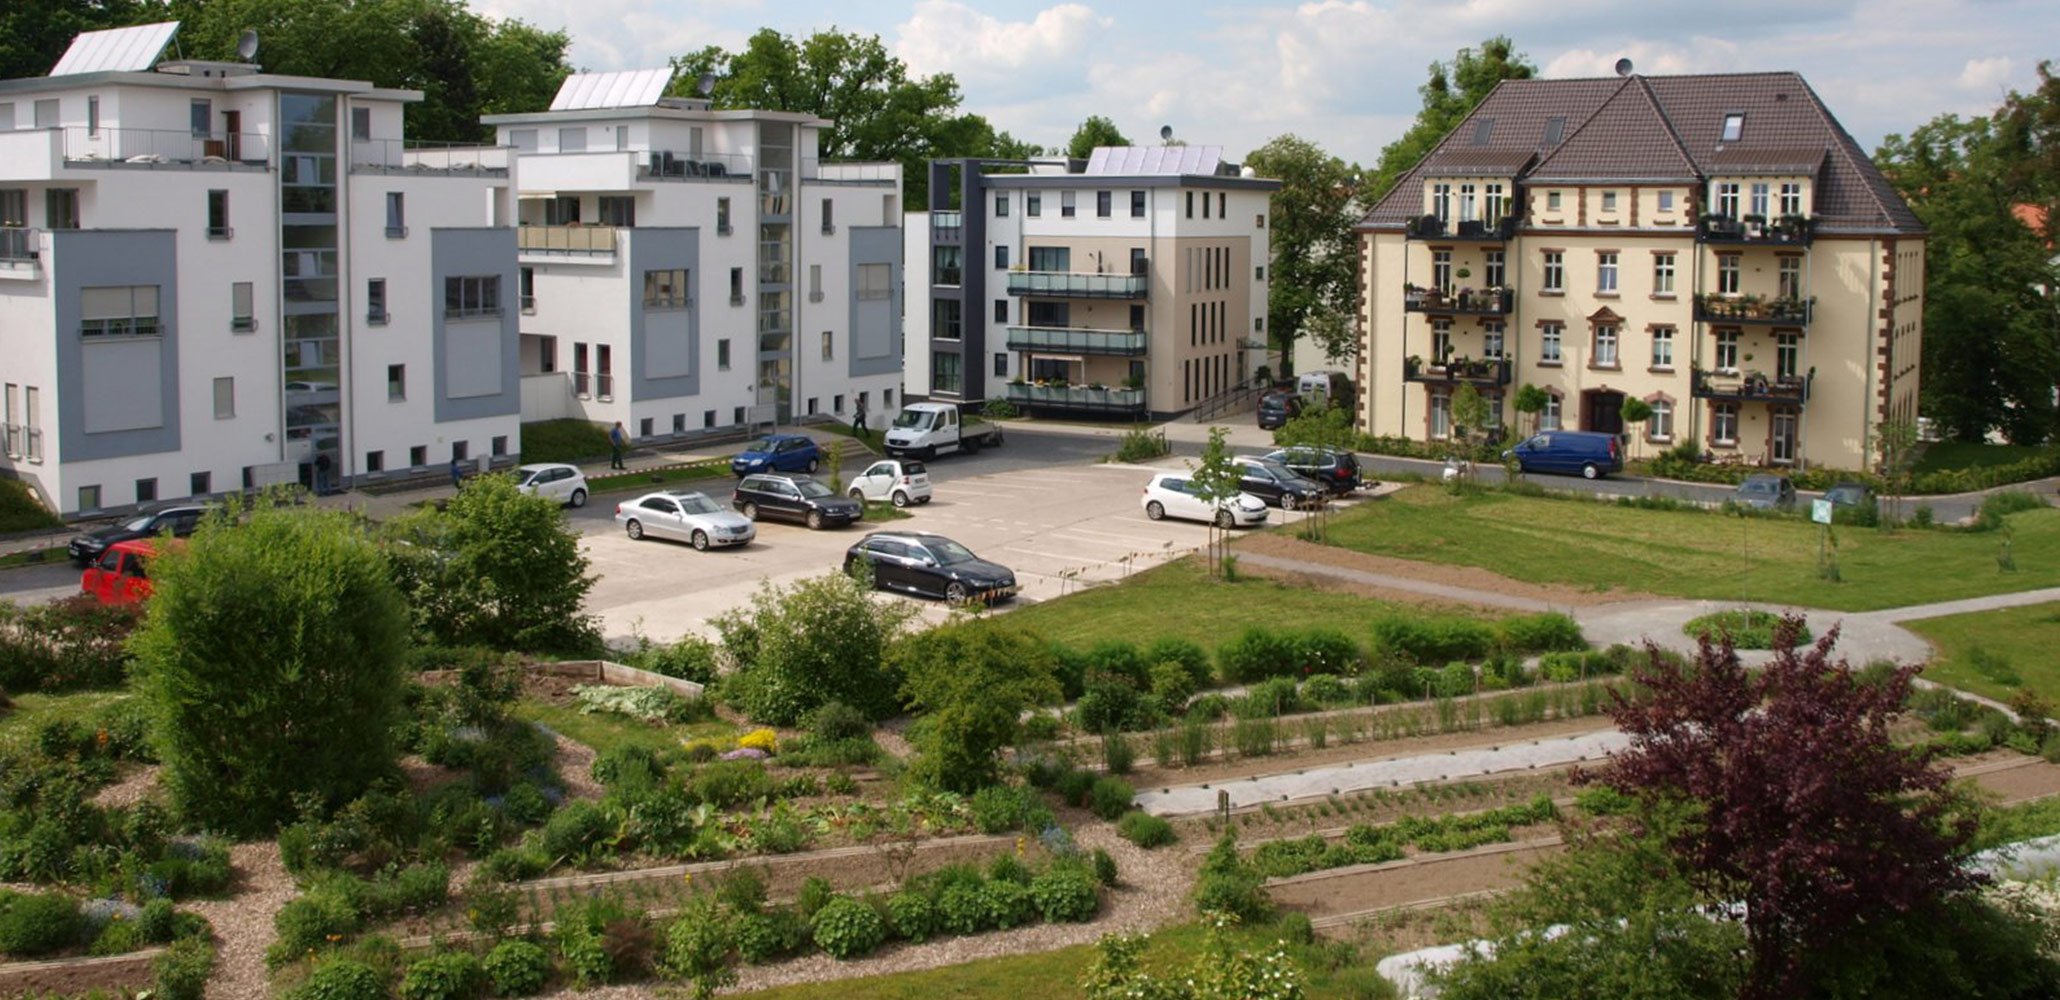 Werkhof Kassel Lernen Wohneinheiten verschiedene Häuser